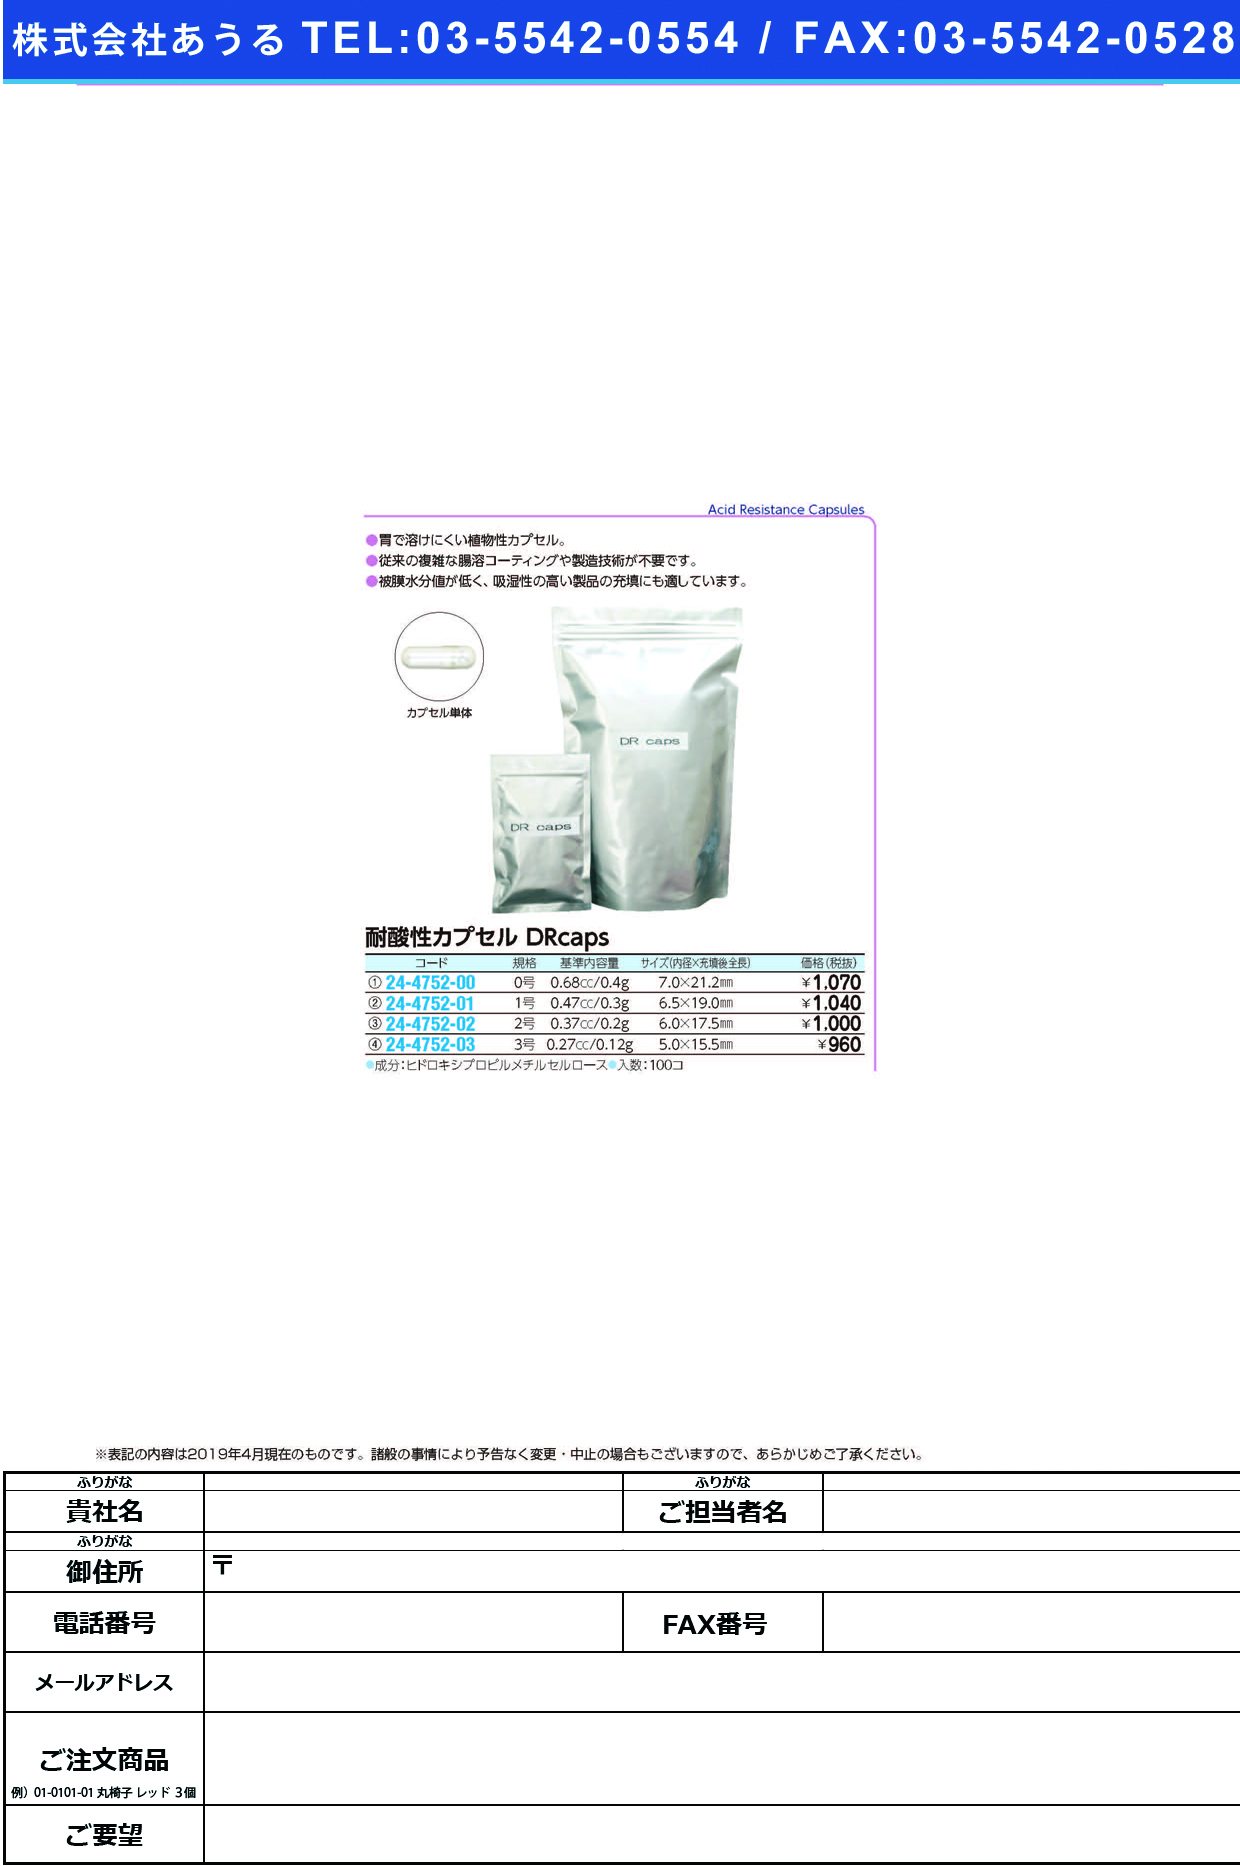 (24-4752-01)耐酸性カプセルＤＲｃａｐｓ #1(ﾄｳﾒｲ)100ｺｲﾘ ﾀｲｻﾝｾｲｶﾌﾟｾﾙDRCAPS【1袋単位】【2019年カタログ商品】